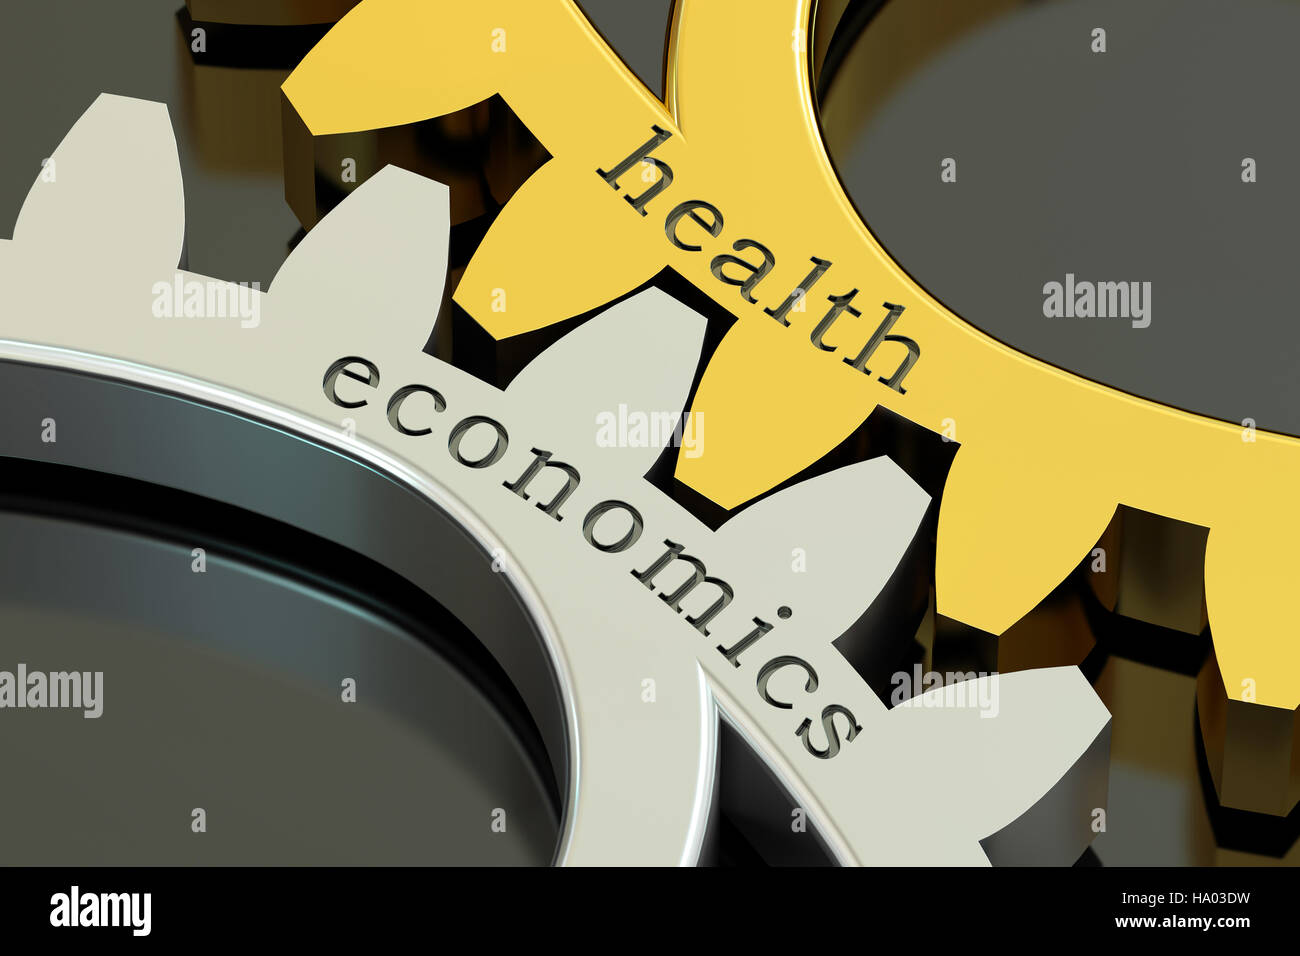 L'économie de la santé, concept sur les roues dentées, 3D Rendering Banque D'Images